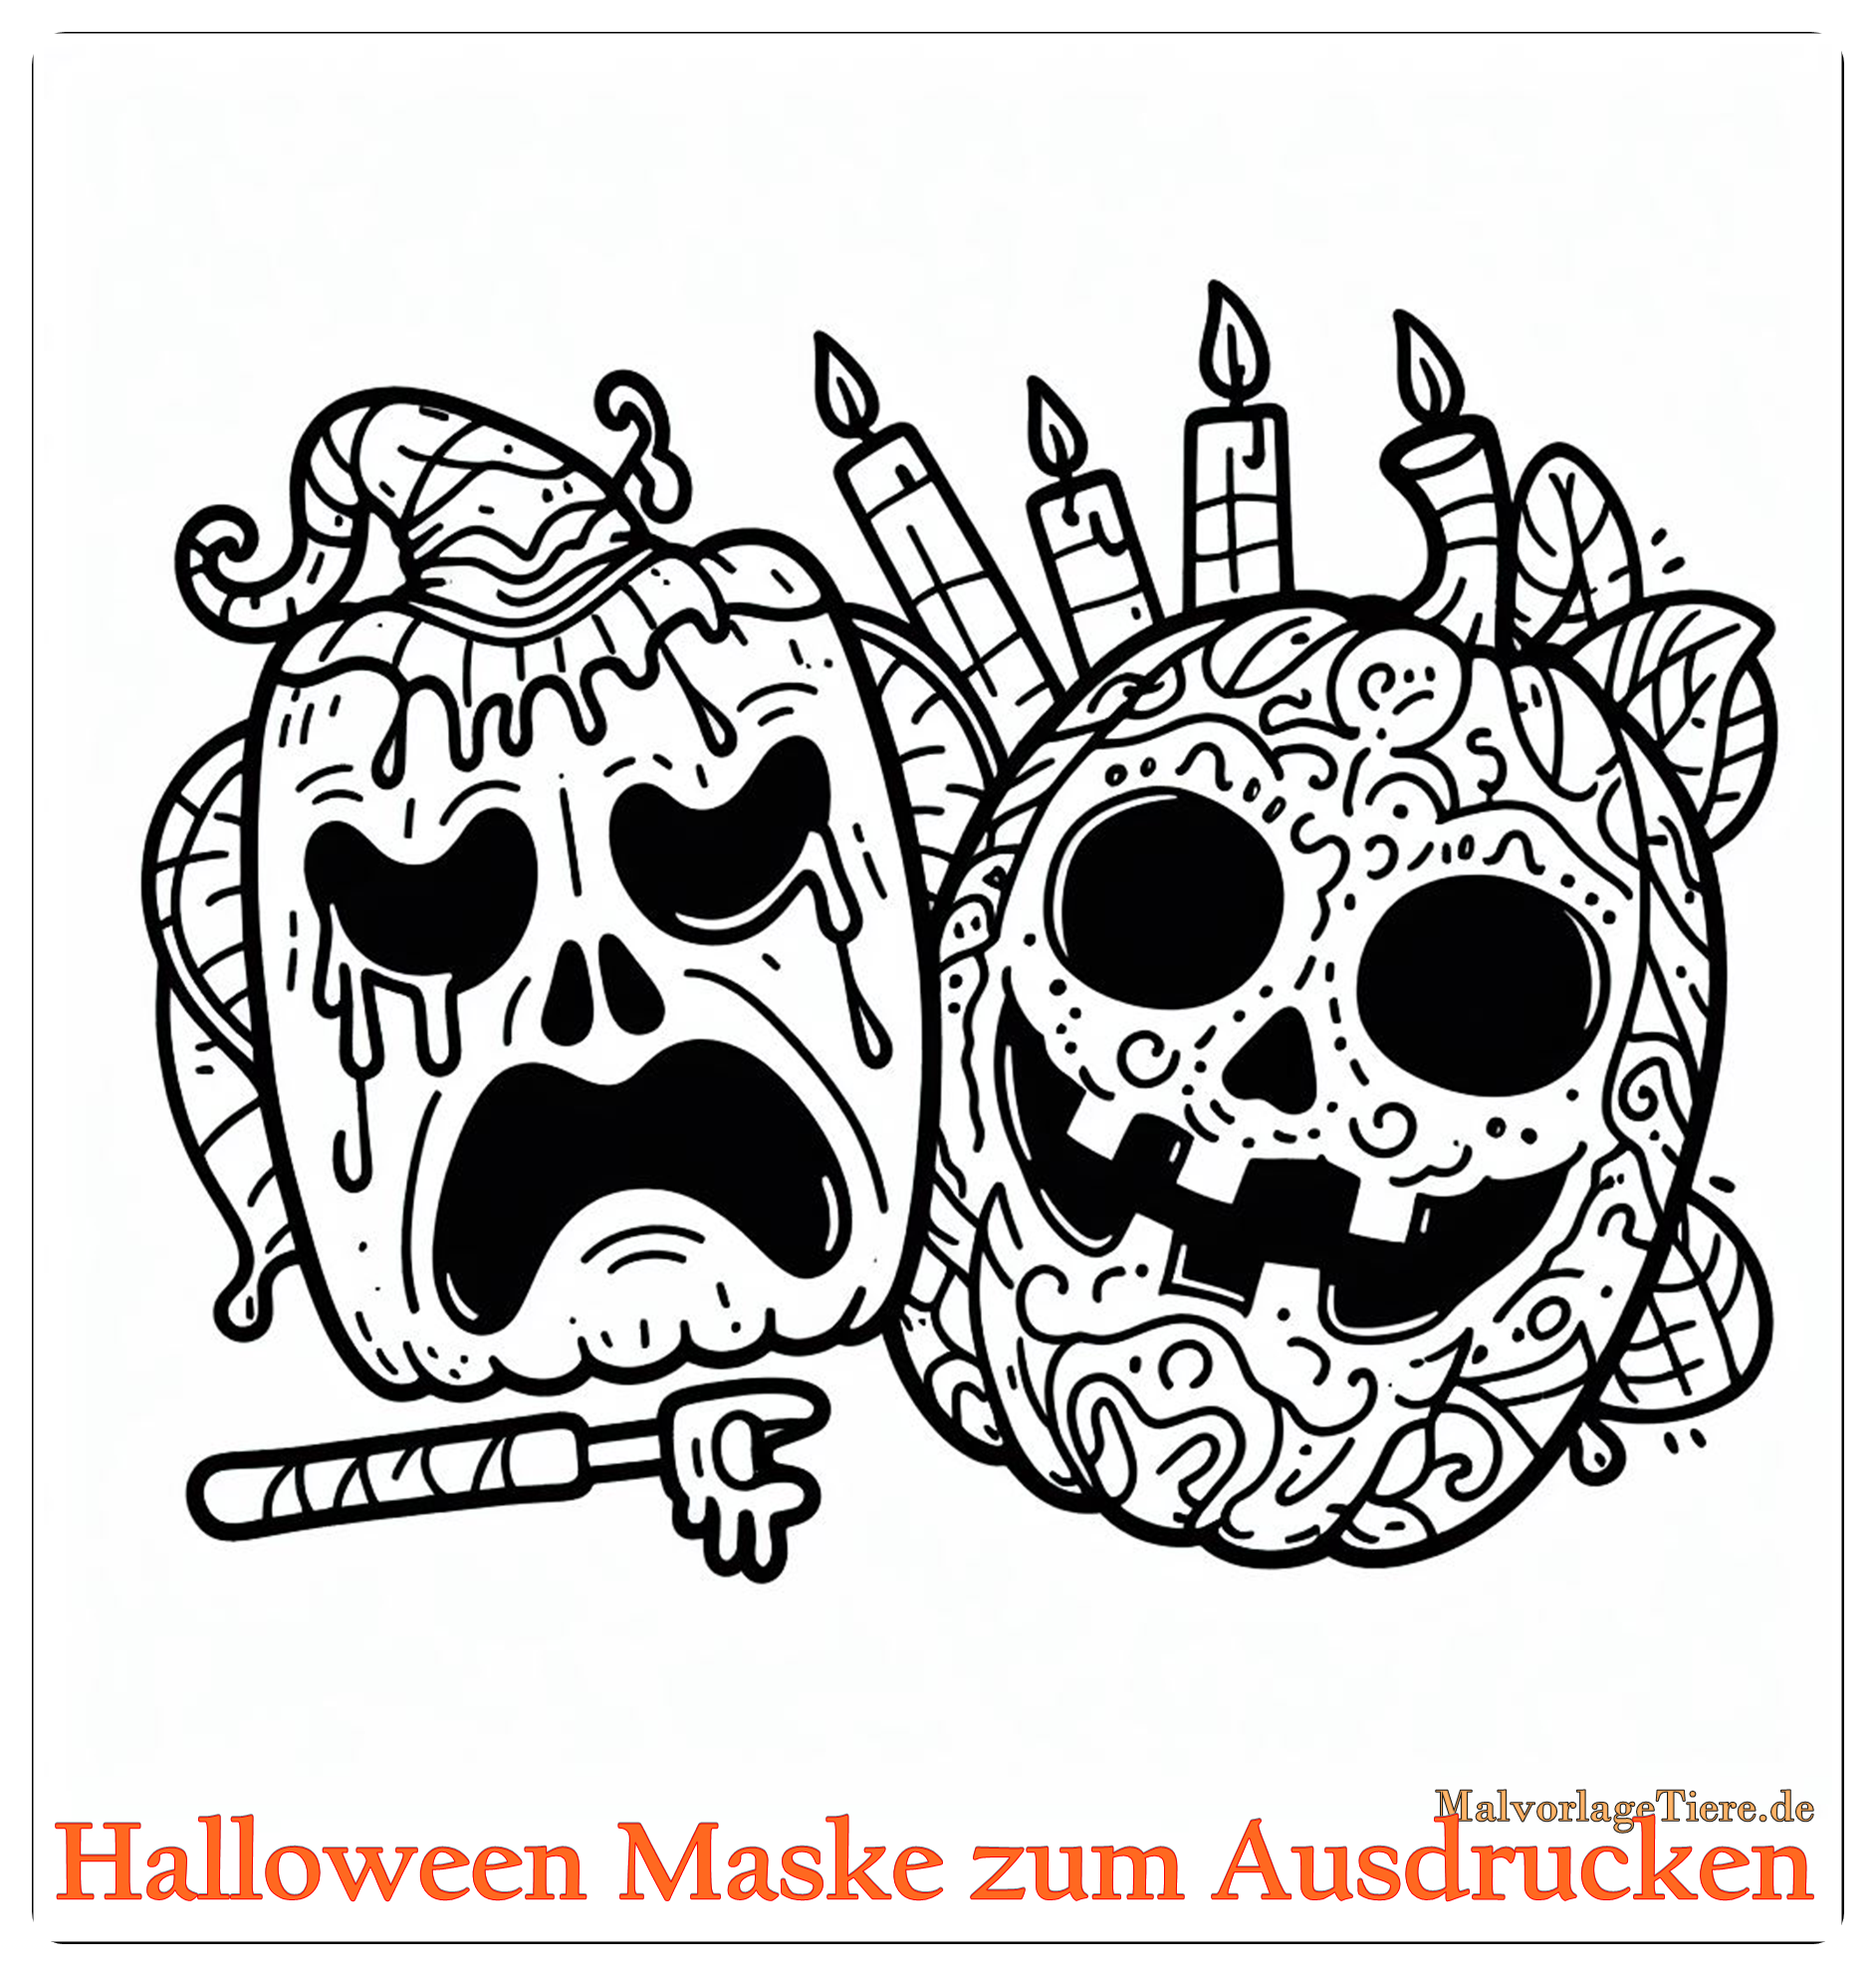 Halloween Maske zum Ausdrucken 03 by malvorlagetiere.de